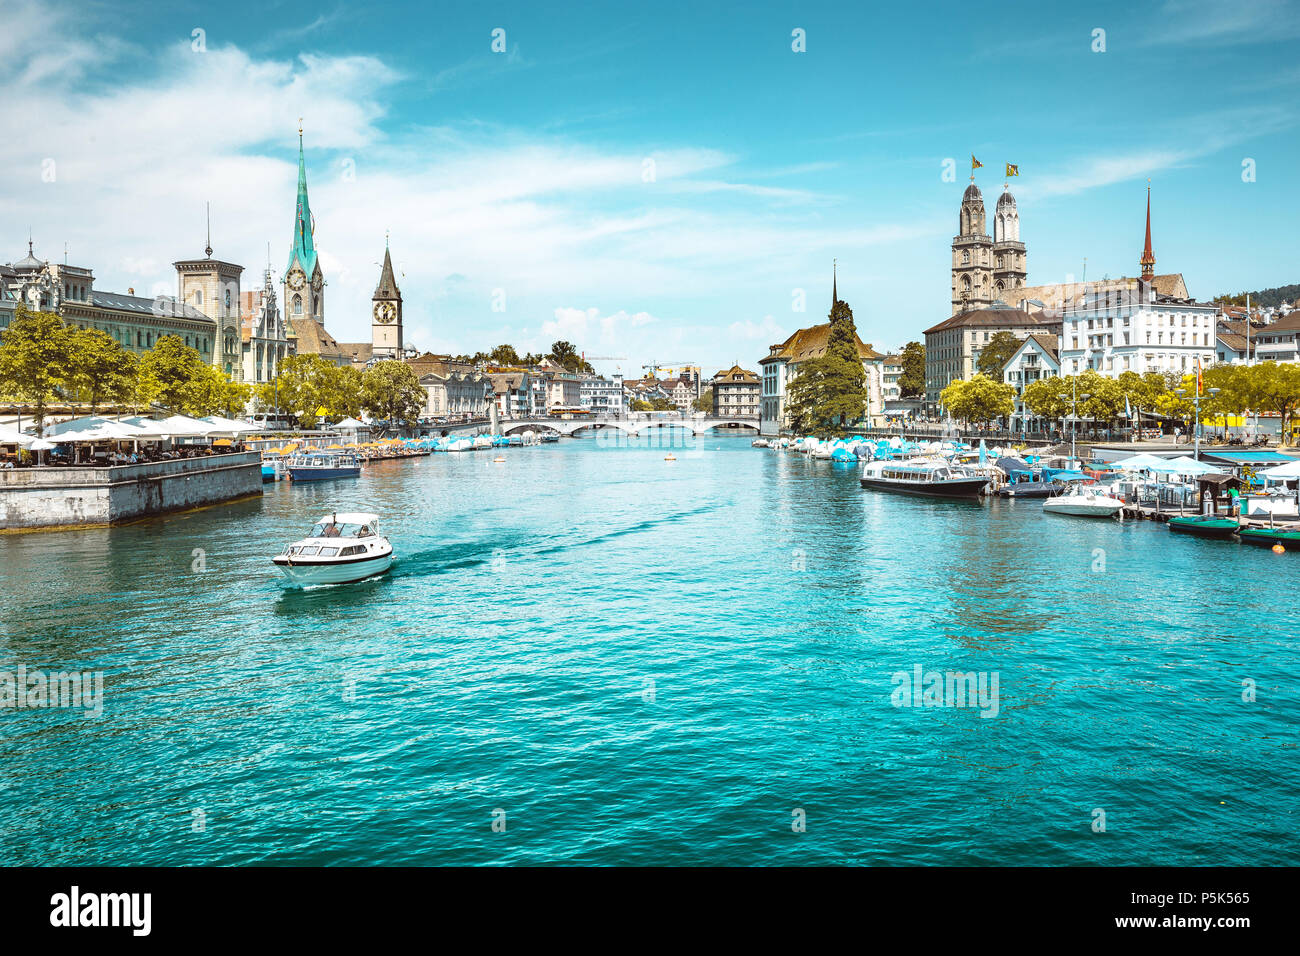 Vista panorámica del centro de la ciudad de Zurich, con iglesias y barcos en el hermoso río Limmat, en verano, en el cantón de Zurich, Suiza Foto de stock